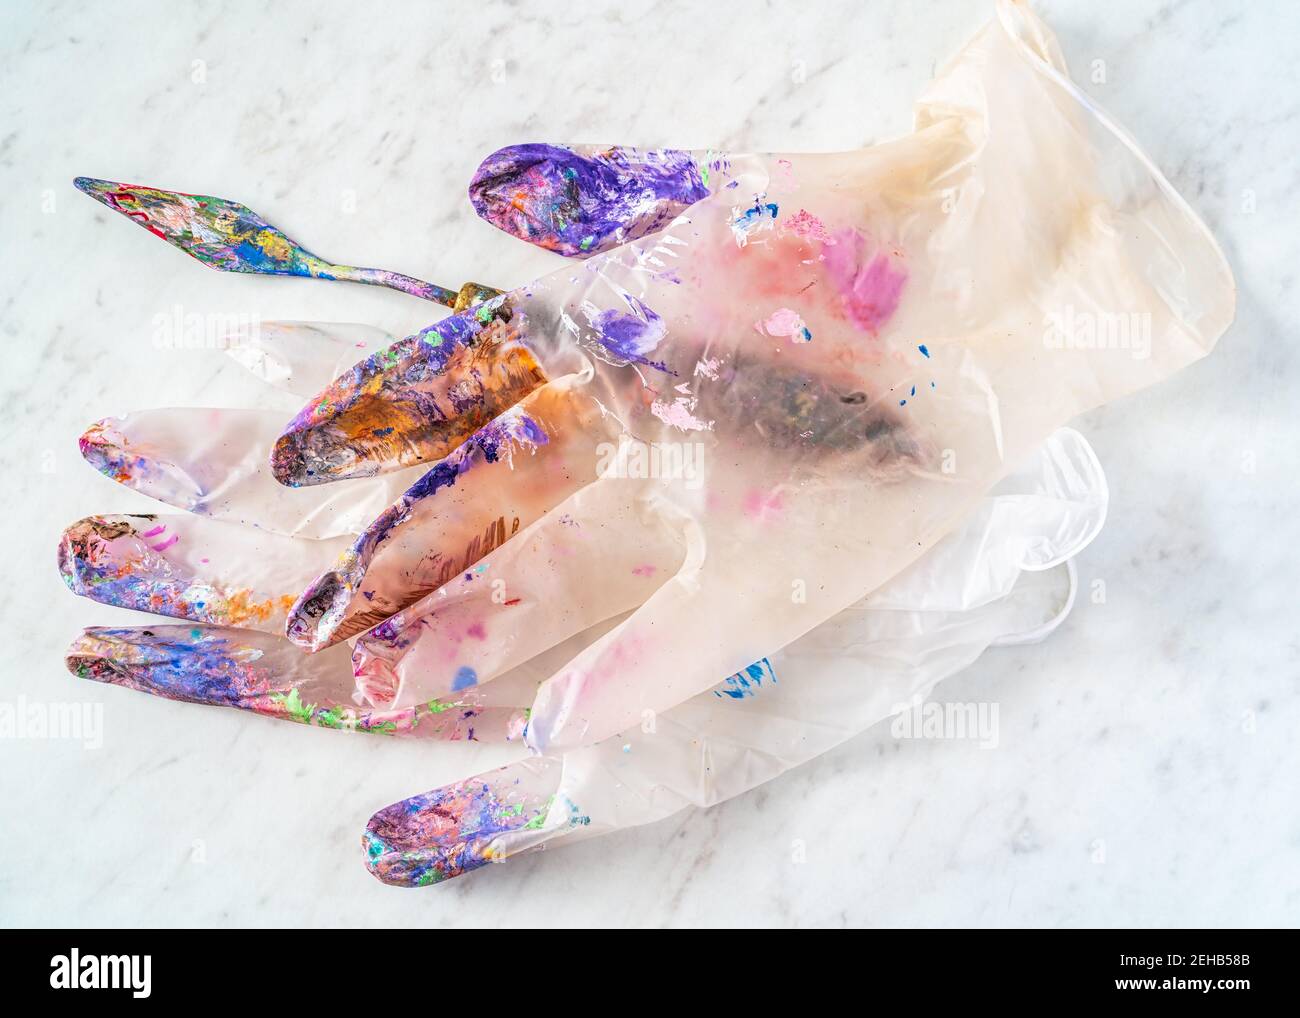 Los guantes de látex transparente de un artista cubiertos de salpicaduras de pintura. Foto de stock